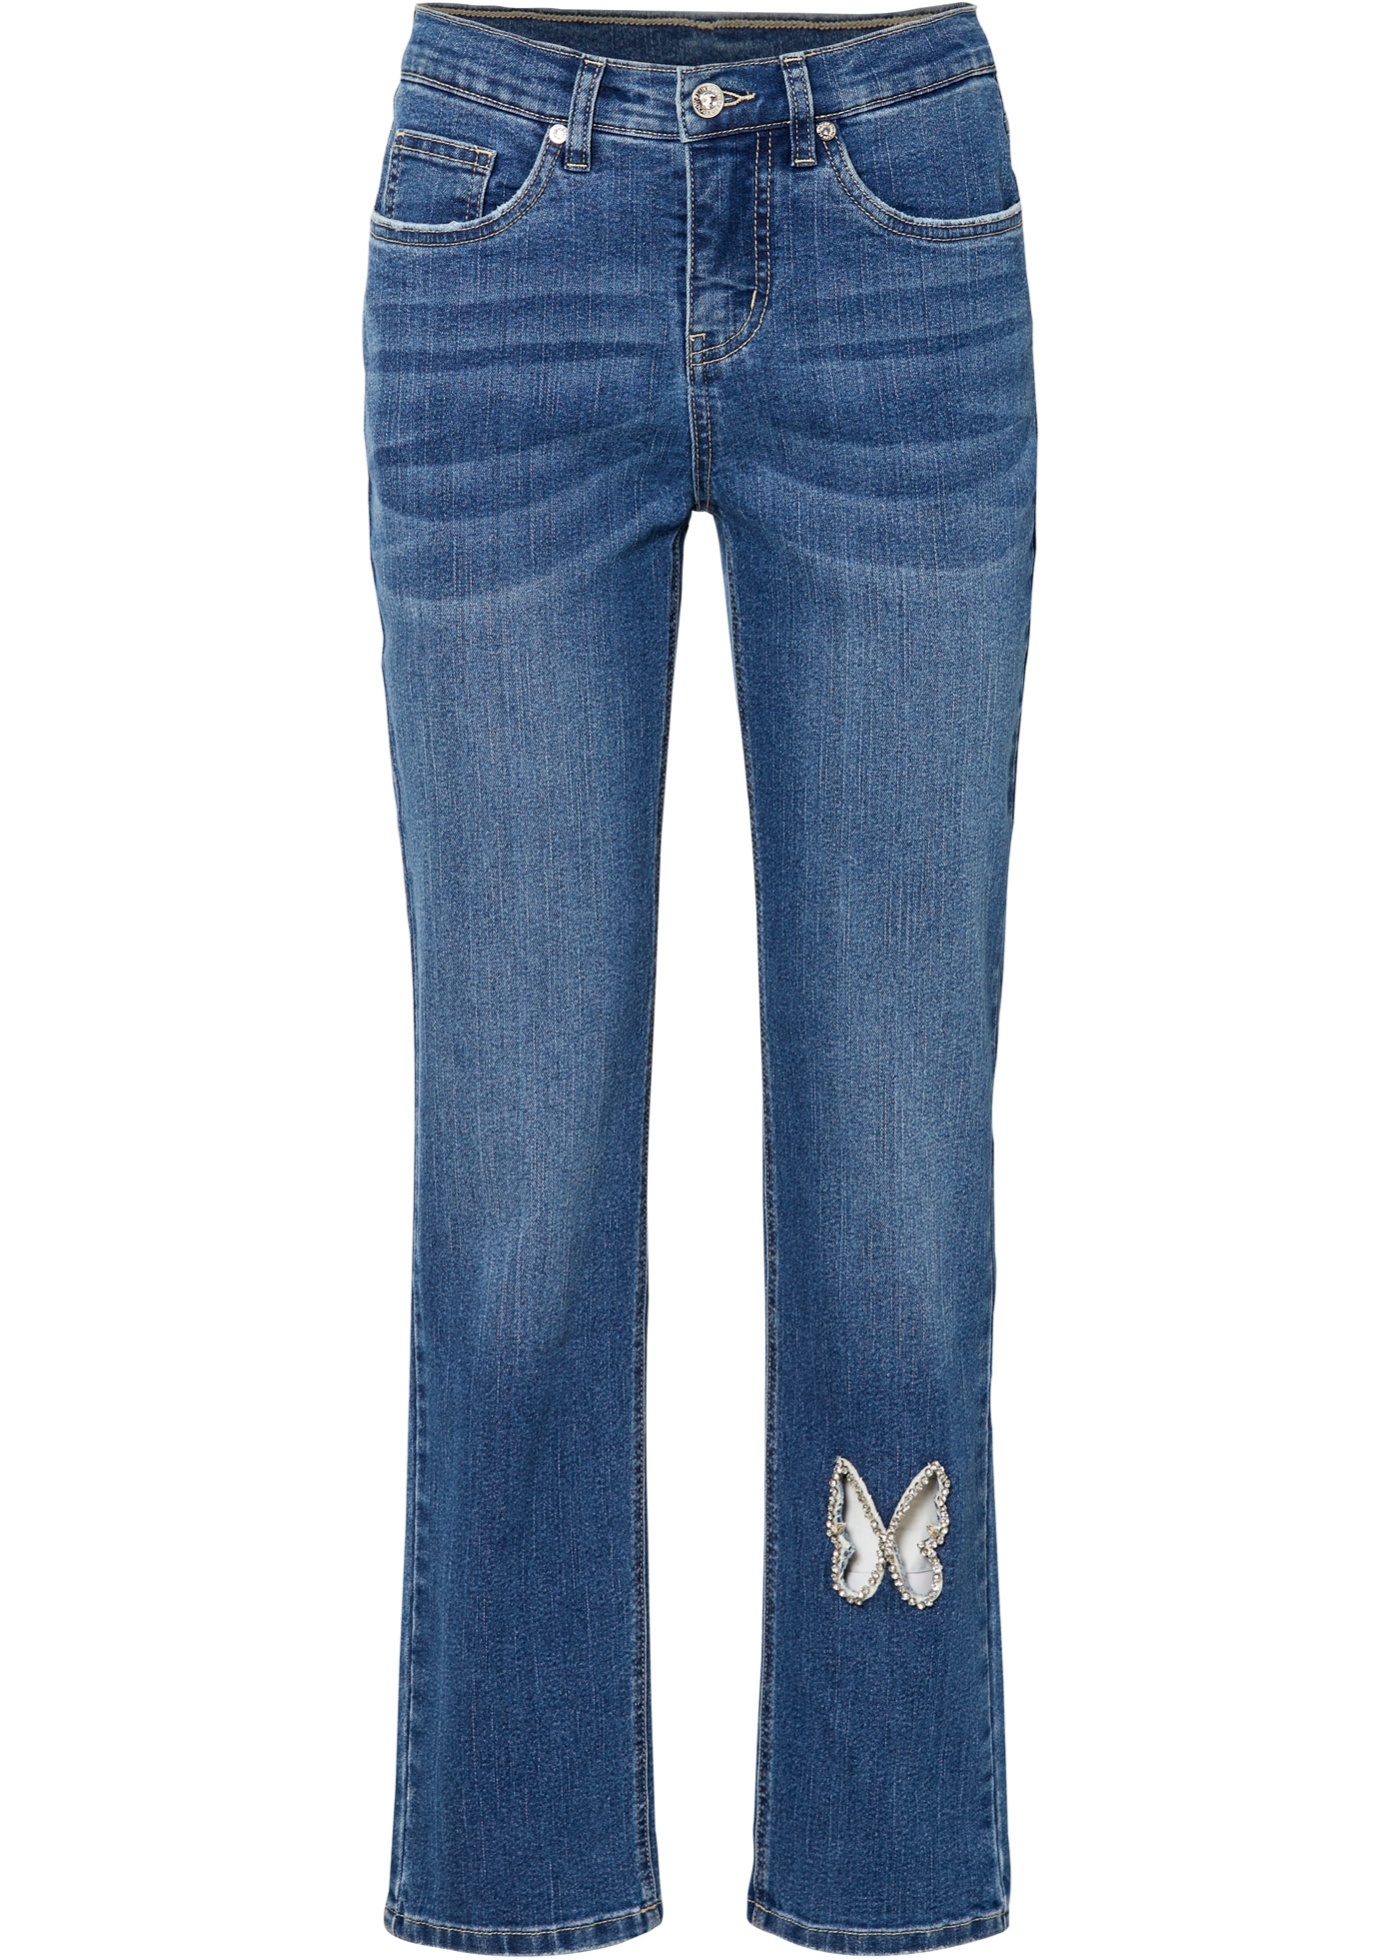 Jeans mit Strass-Applikation